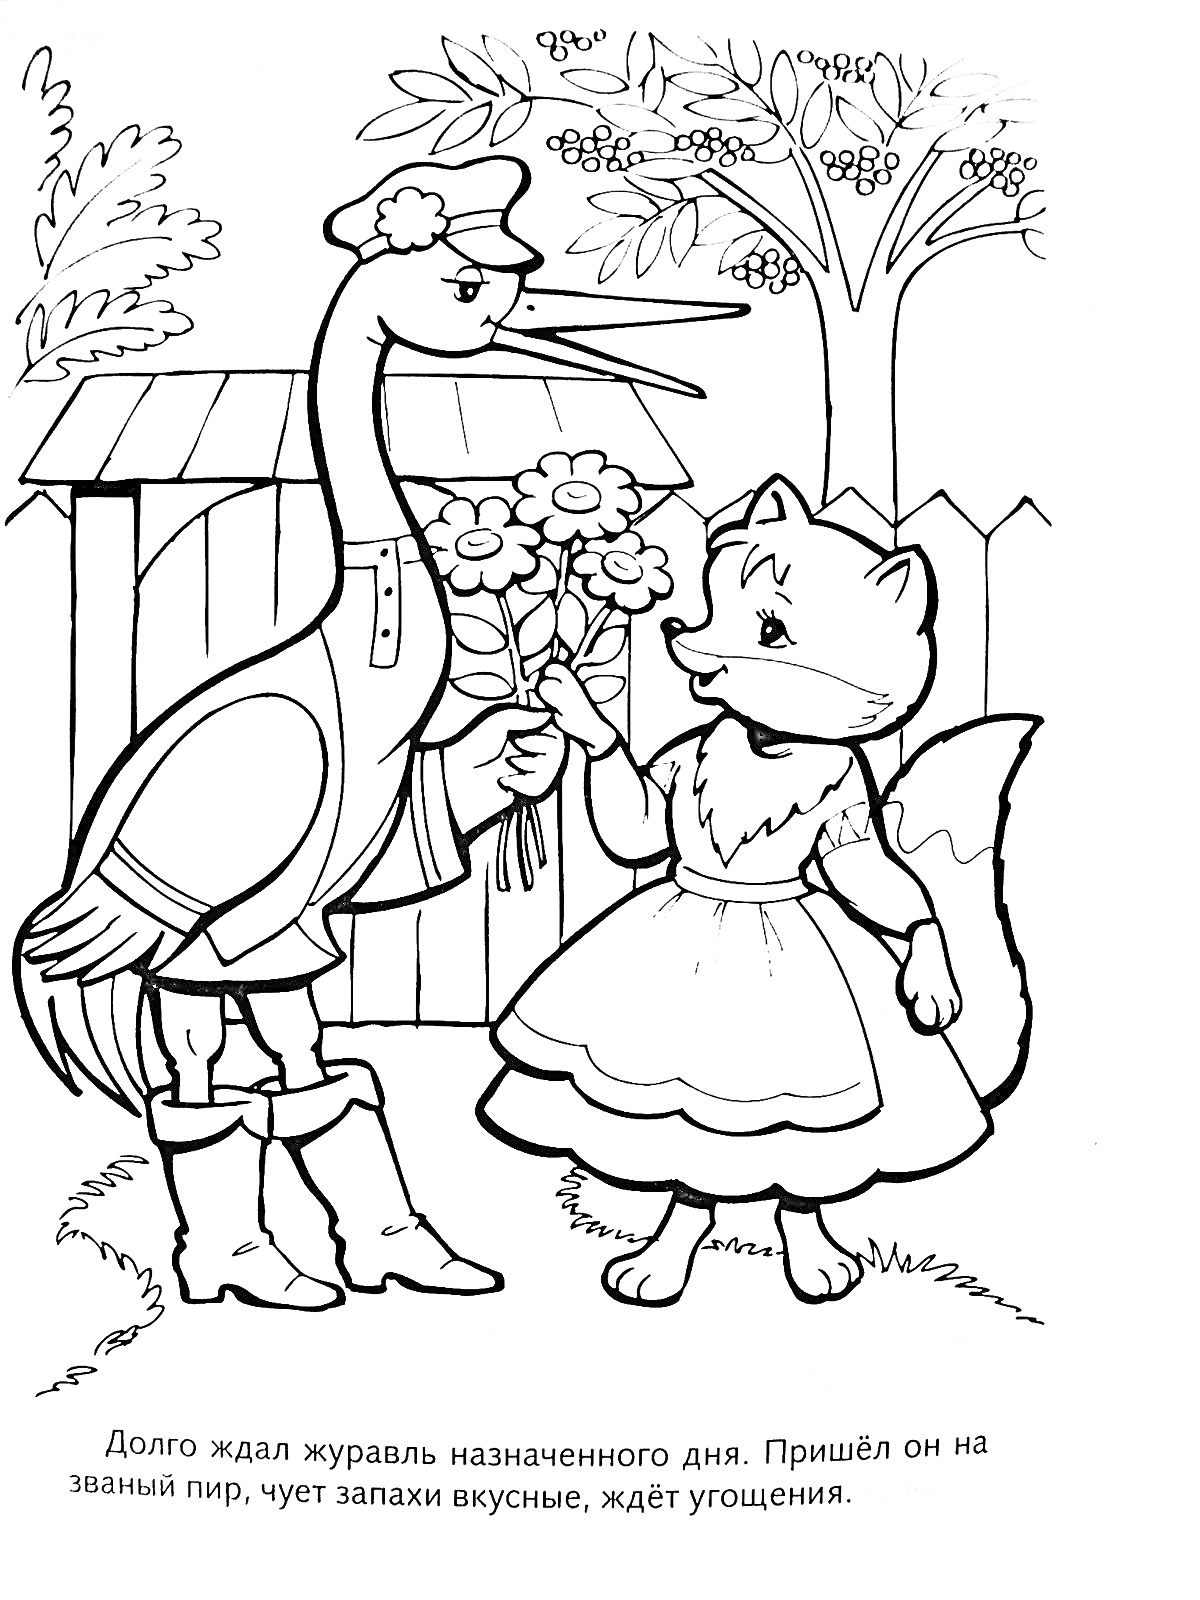 Раскраска Лиса и журавль стоят под деревом у деревянного забора. Лиса смотрит на журавля, который дарит ей цветы. На заднем плане дерево с листвой.